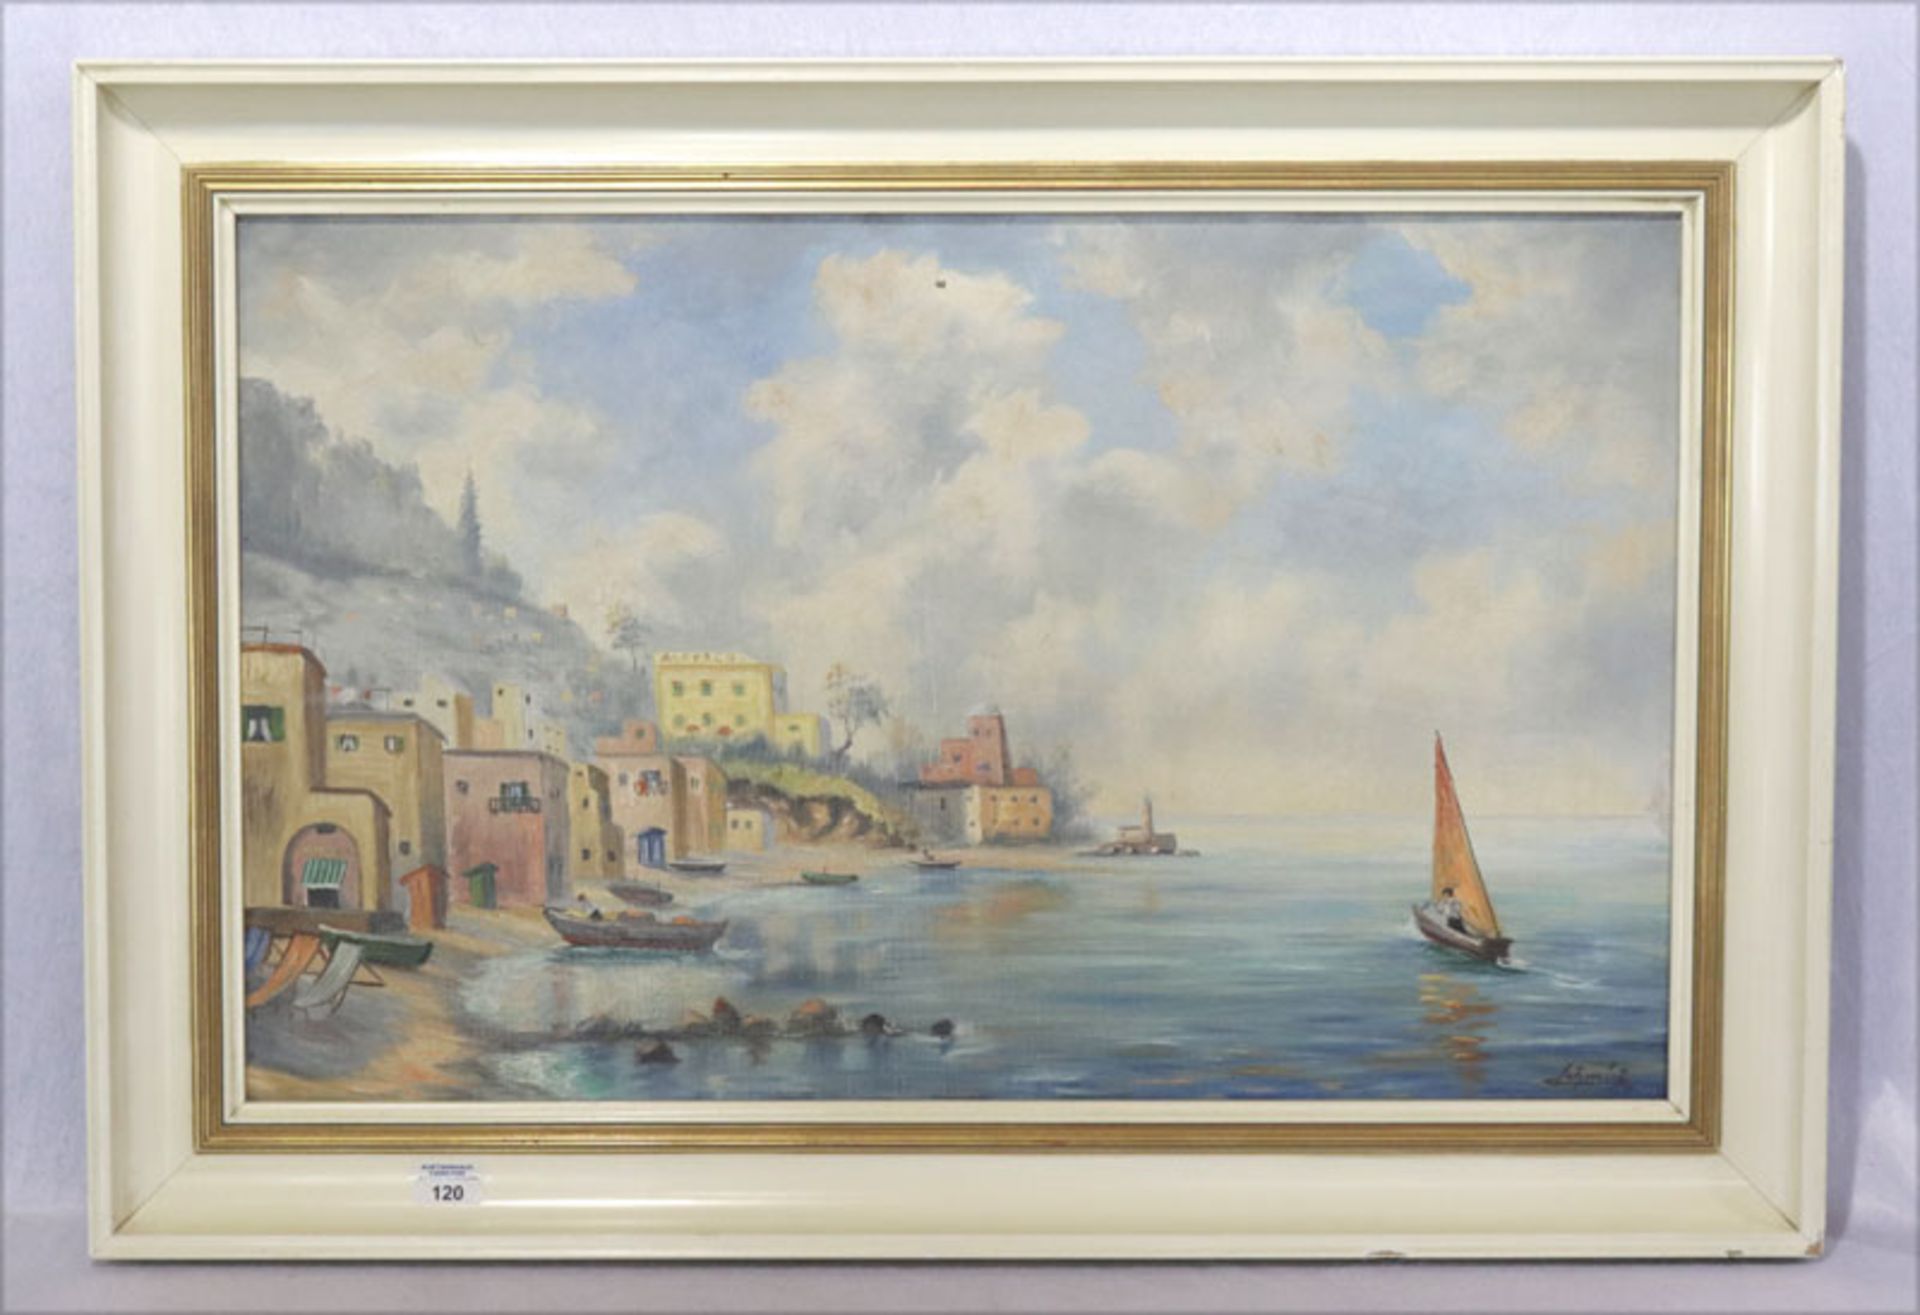 Gemälde ÖL/LW 'Küsten-Szenerie von Ischia', signiert Schmid, LW hat Farbablösungen, gerahmt, Rahmen 